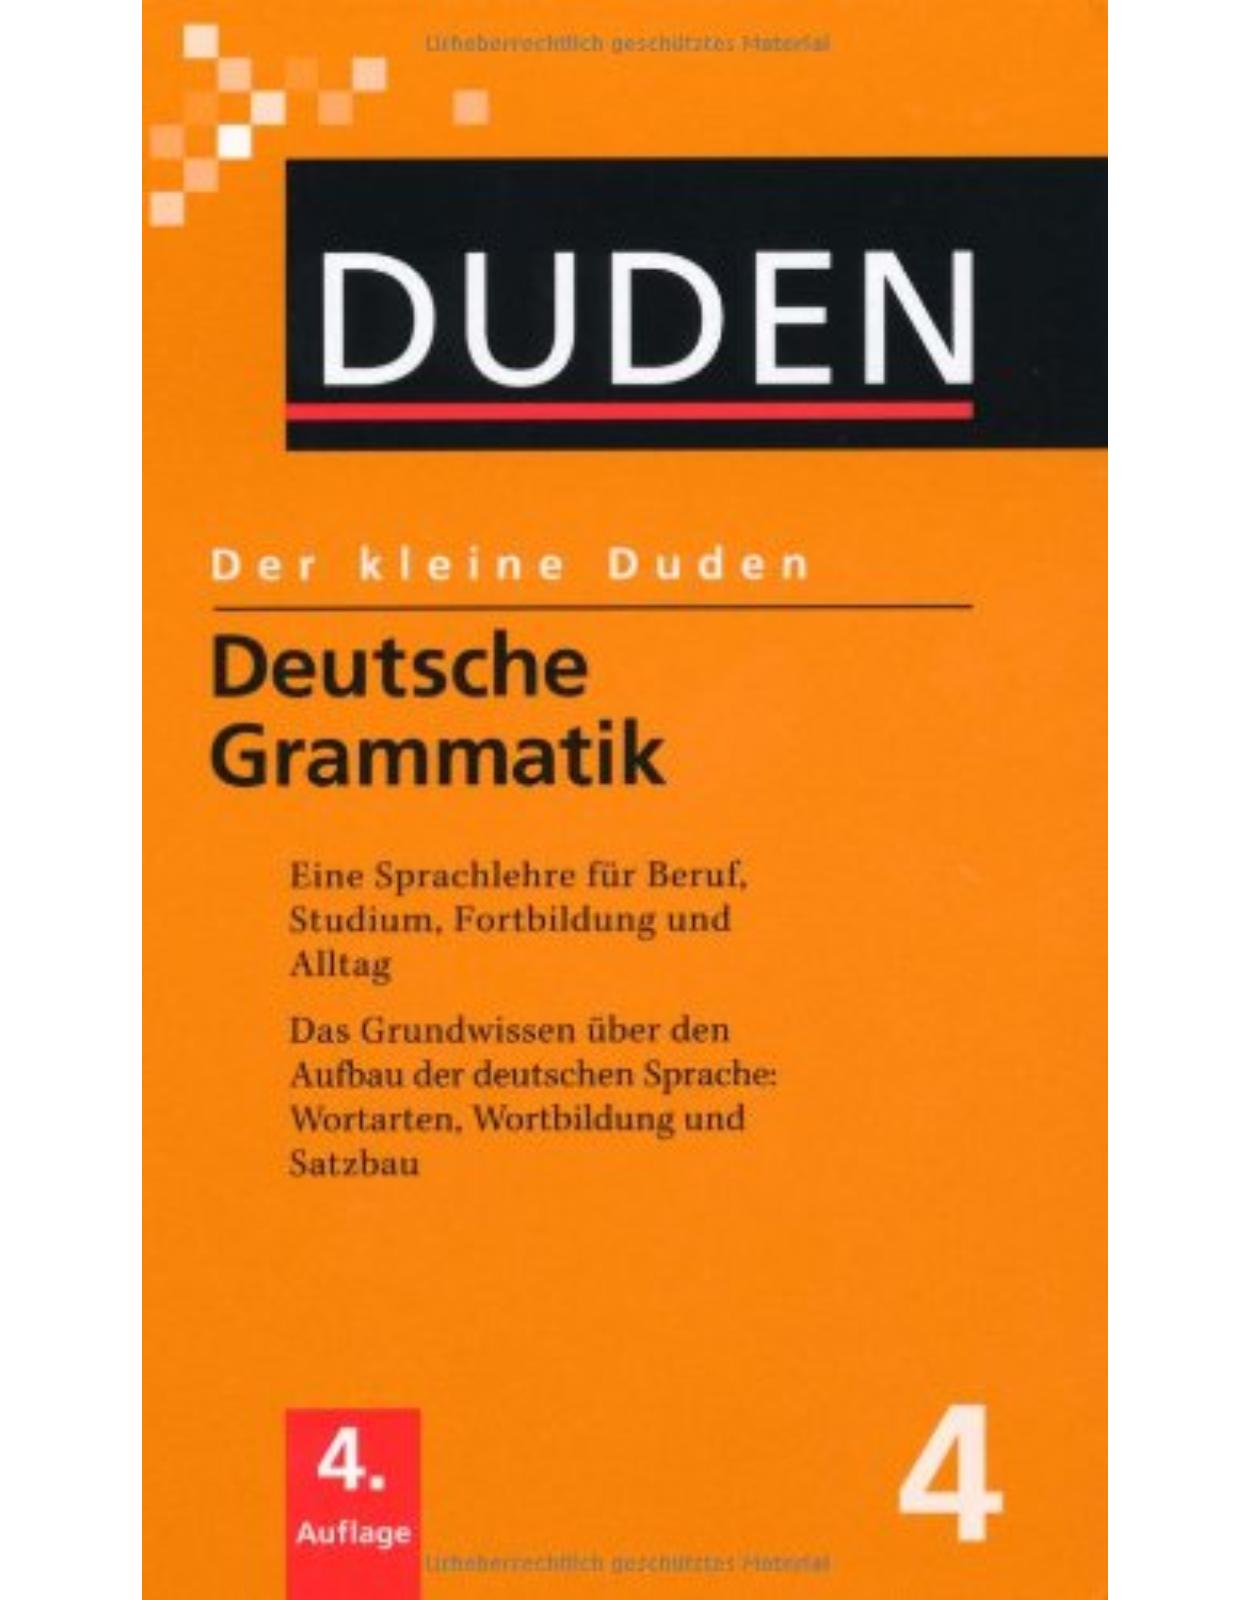 Der kleine Duden - Band 4 : Deutsche Grammatik